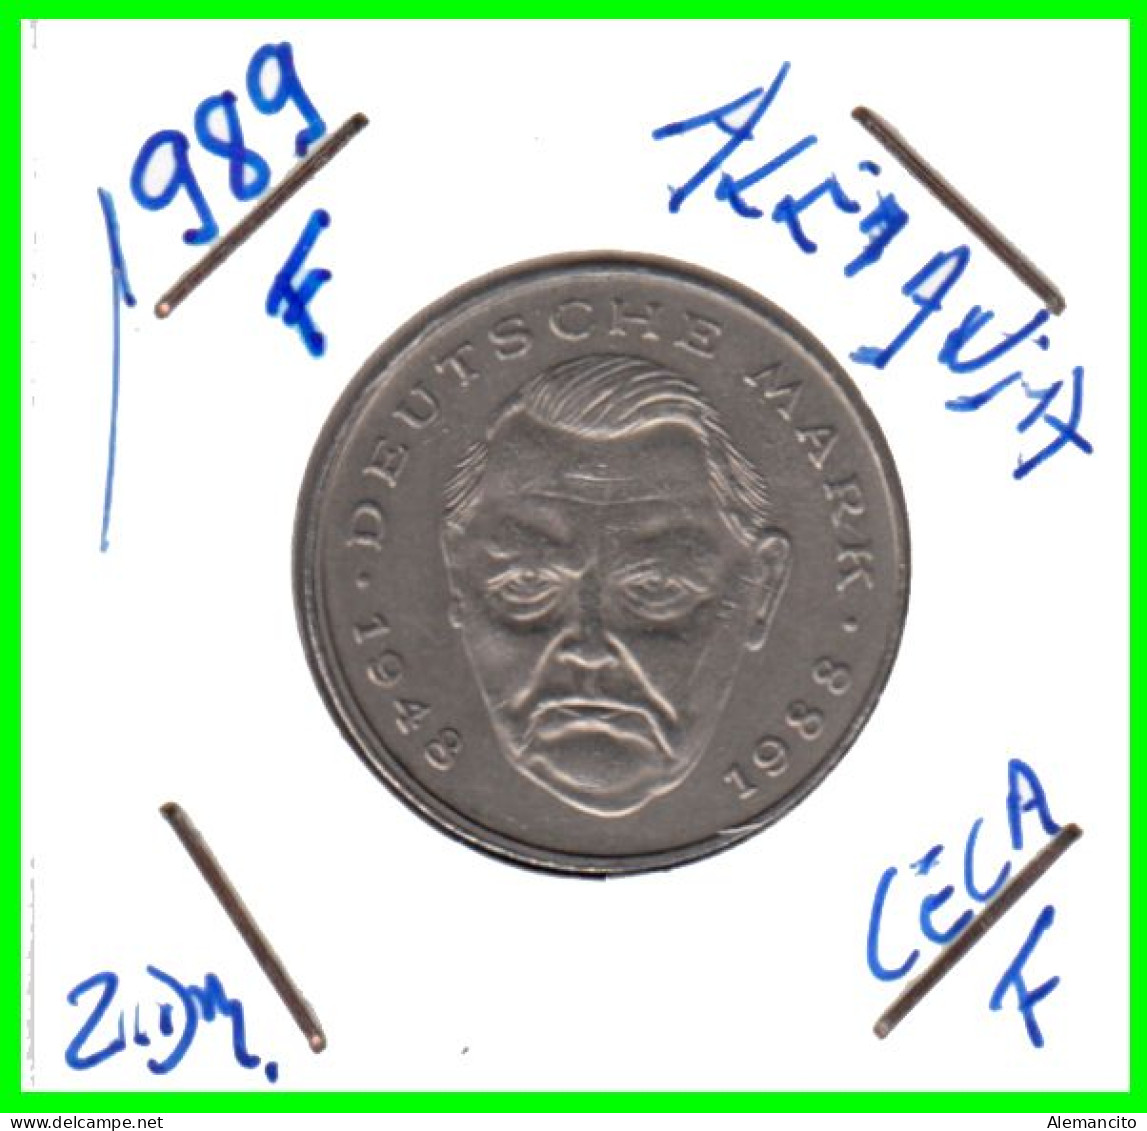 COIN ALEMANIA ( GERMANY ) MONEDA DE 2.00 DM AÑO 1989 CECA-F - STTUCART -LUDWIG ERHARD - NÍQUEL - 2 Marcos